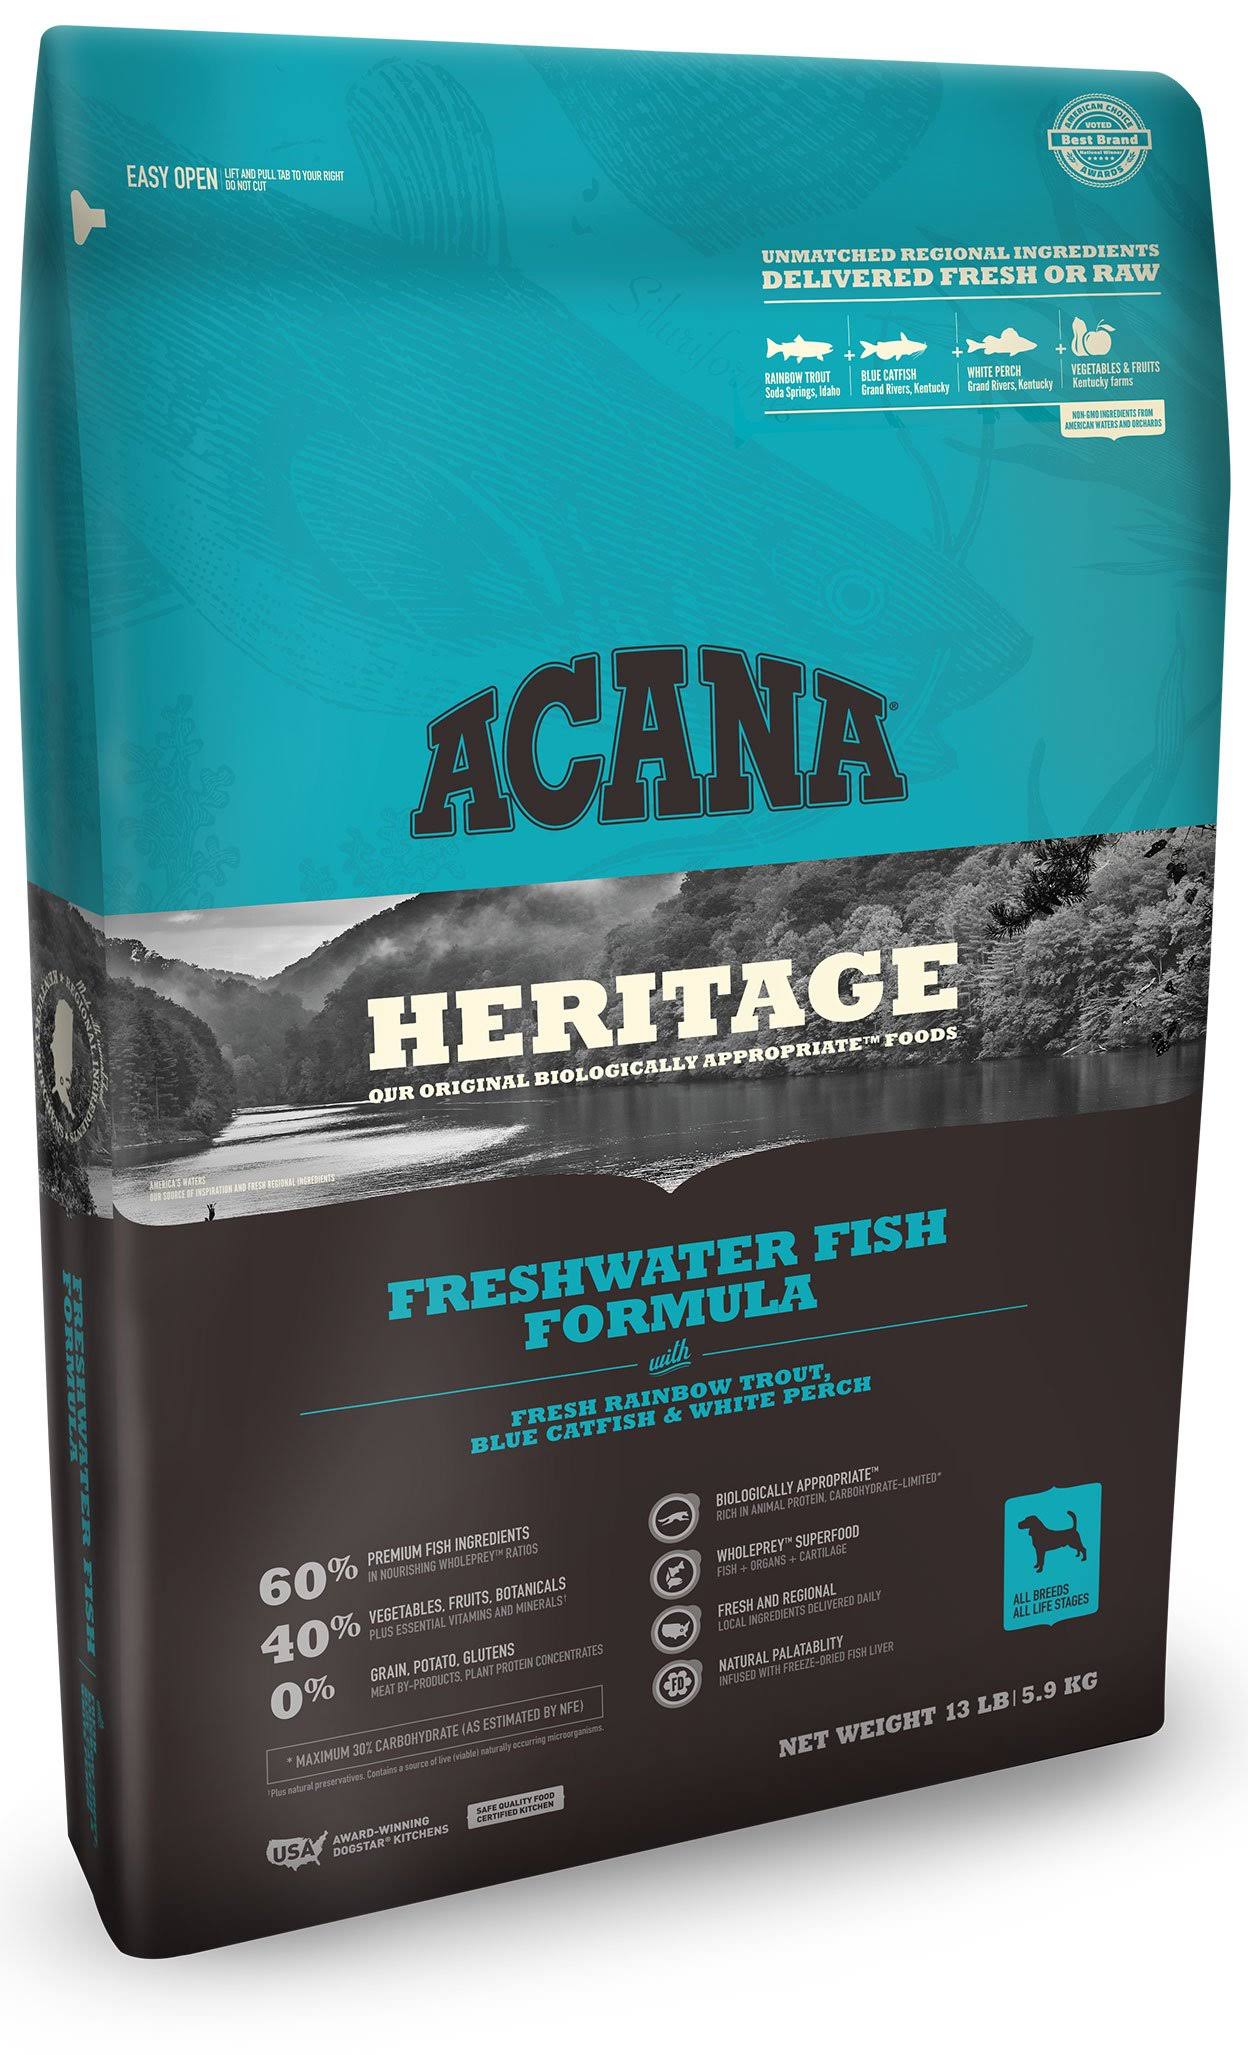 Acana Dog Food - Freshwater Fish